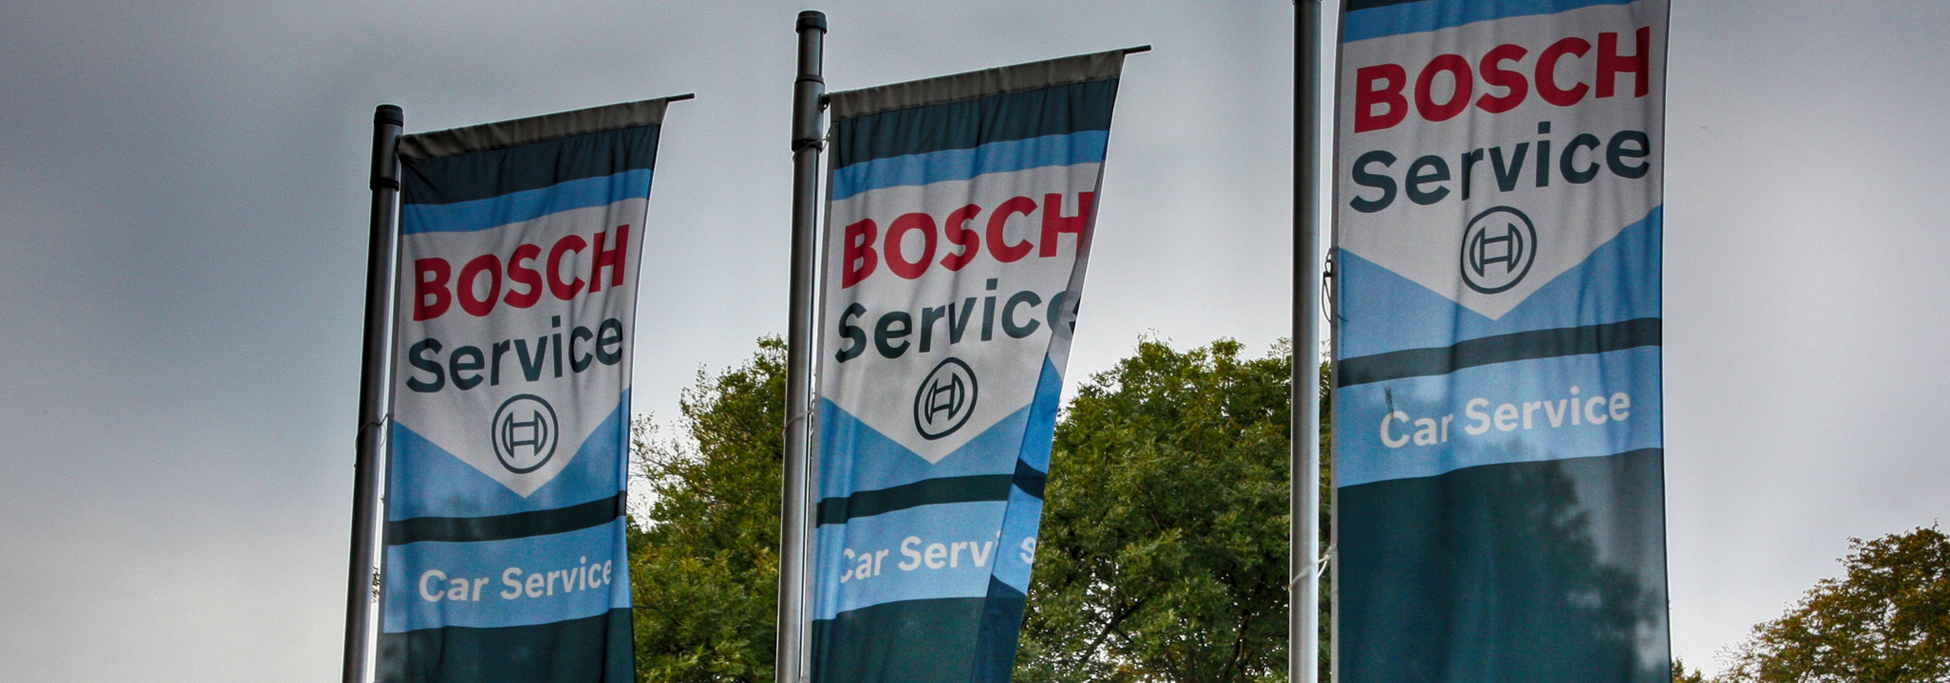 Bosch Werkstattservice